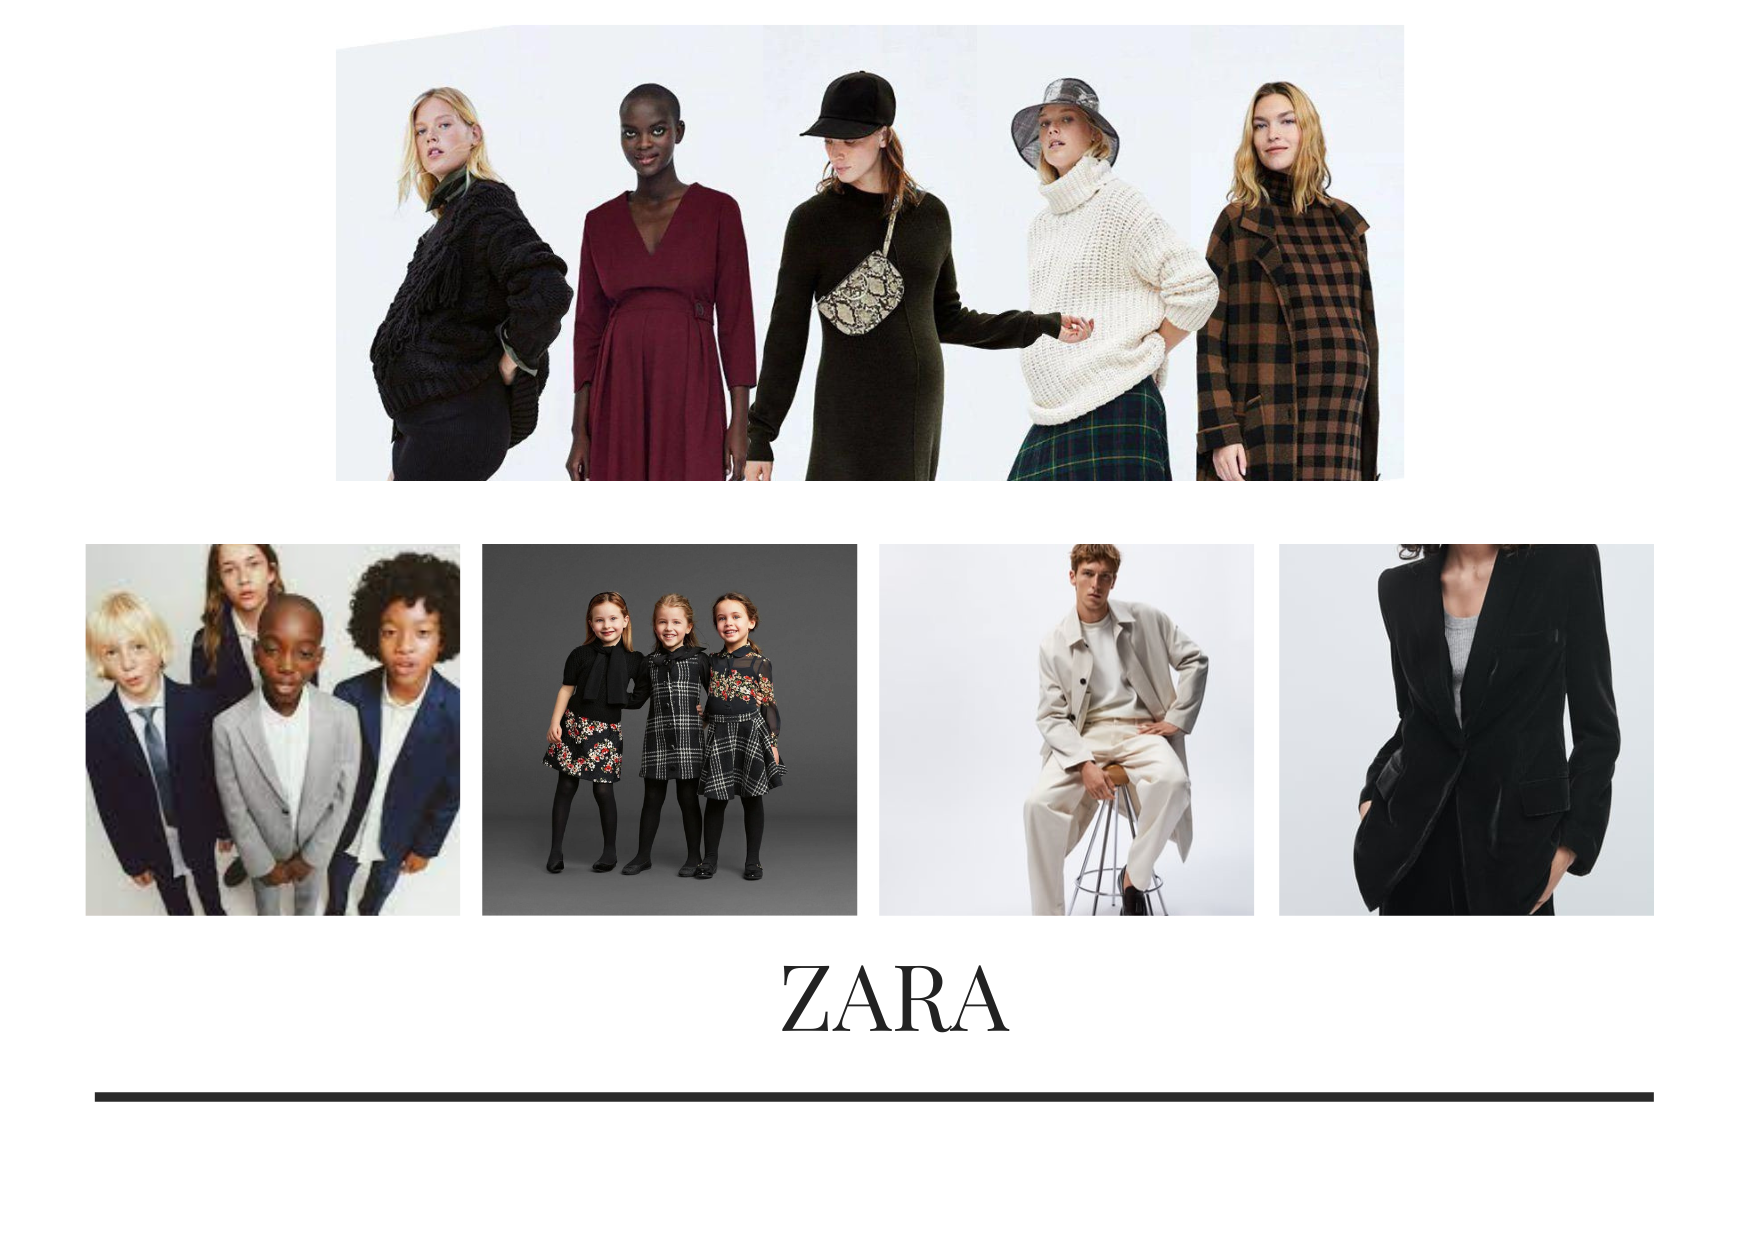 Phong cơ hội thời trang và năng động đa dạng và phong phú, cao cấp kể từ mái ấm kiểu mốt Zara